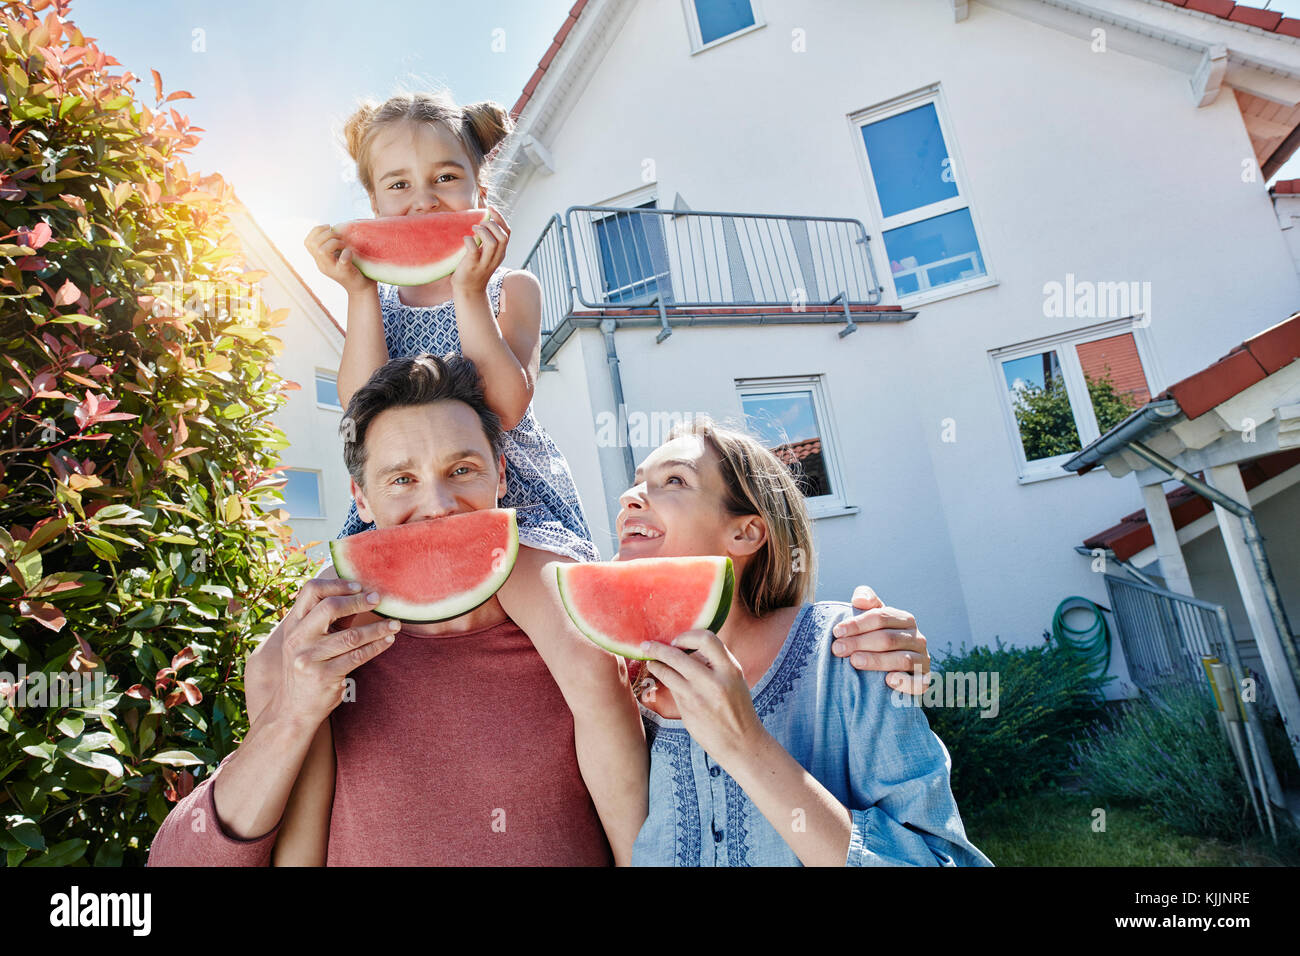 Portrait de famille heureuse avec des tranches de melon d'eau en face de leur maison Banque D'Images